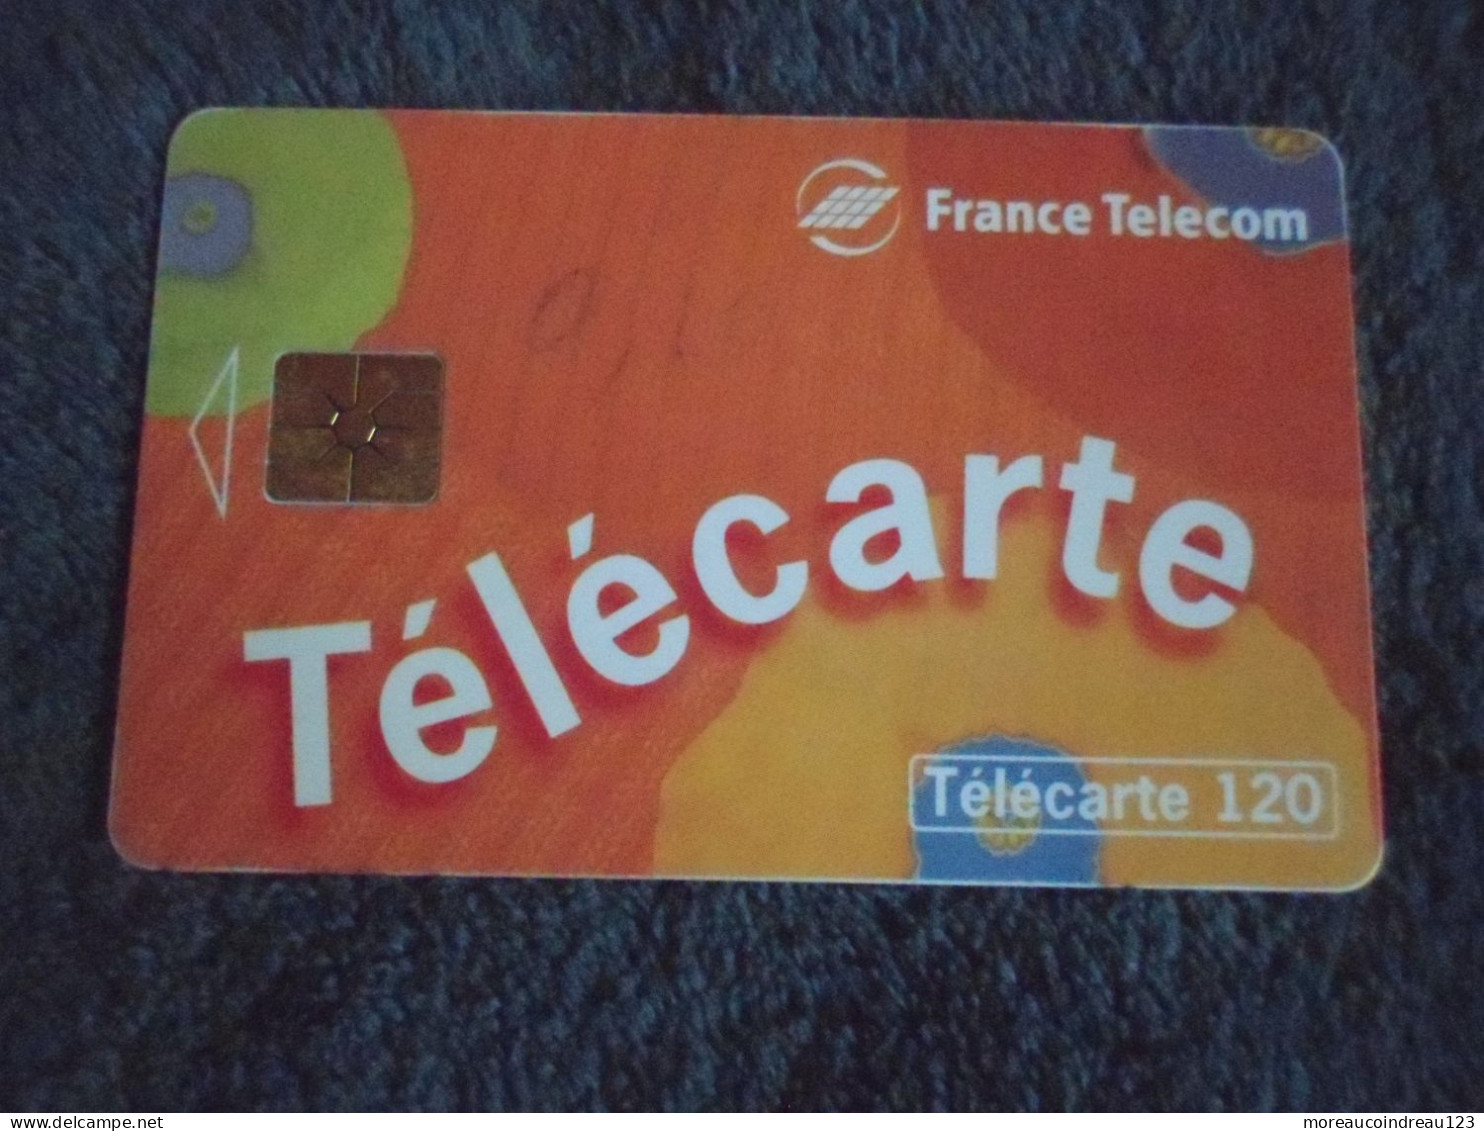 Télécarte France Télécom Pour Appeler Chez Vous - Operatori Telecom